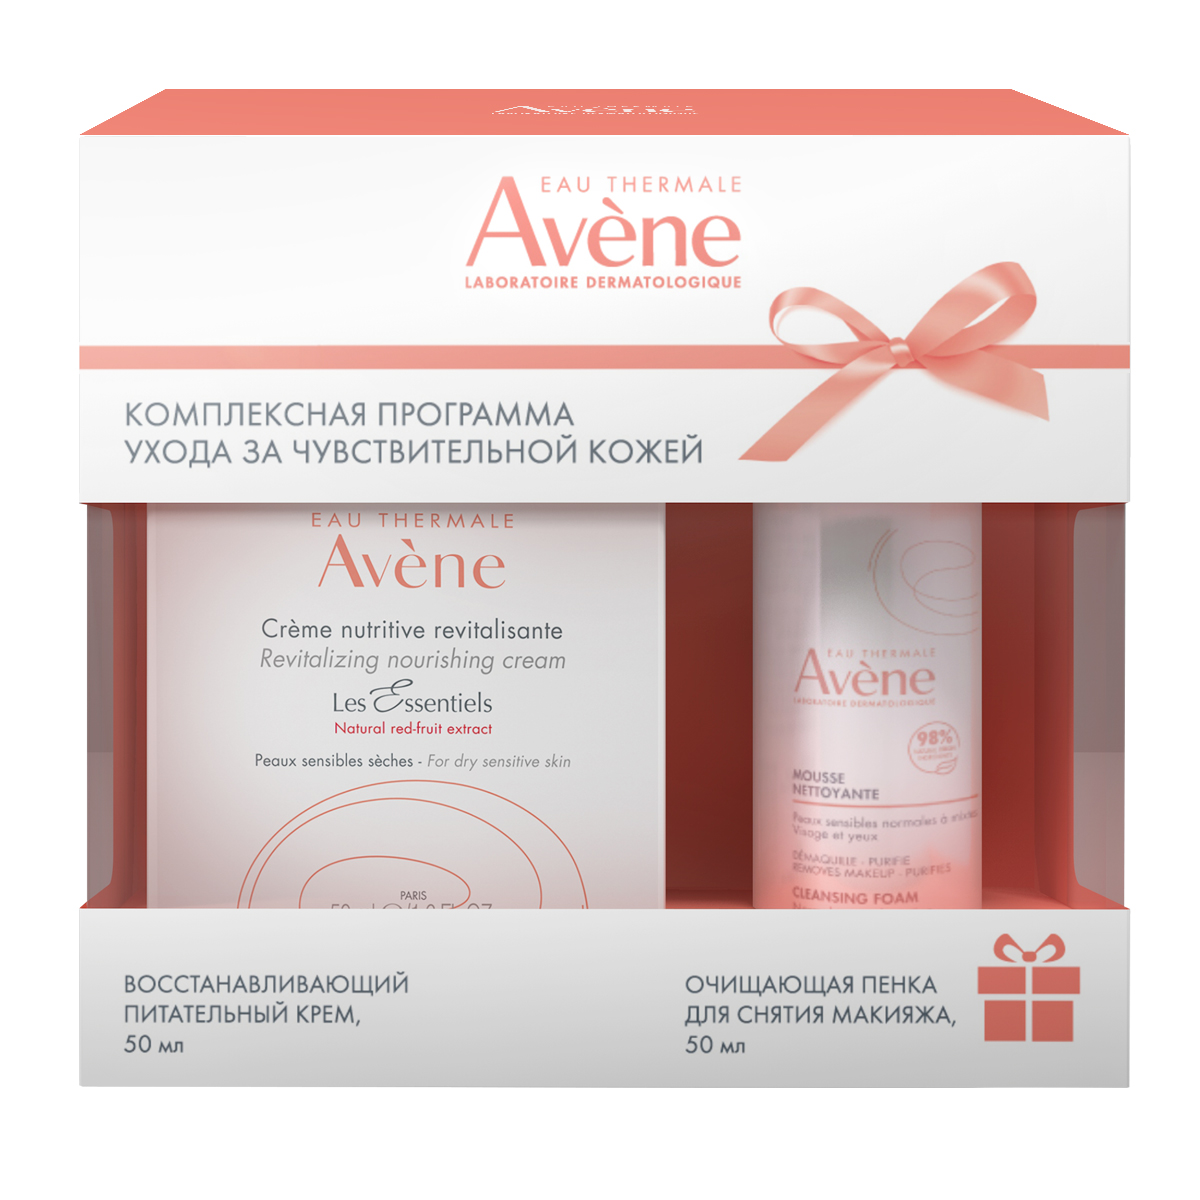 Avene Набор: восстанавливающий питательный крем 50 мл + очищающая пенка для снятия макияжа 50 мл (Avene, Sensibles)